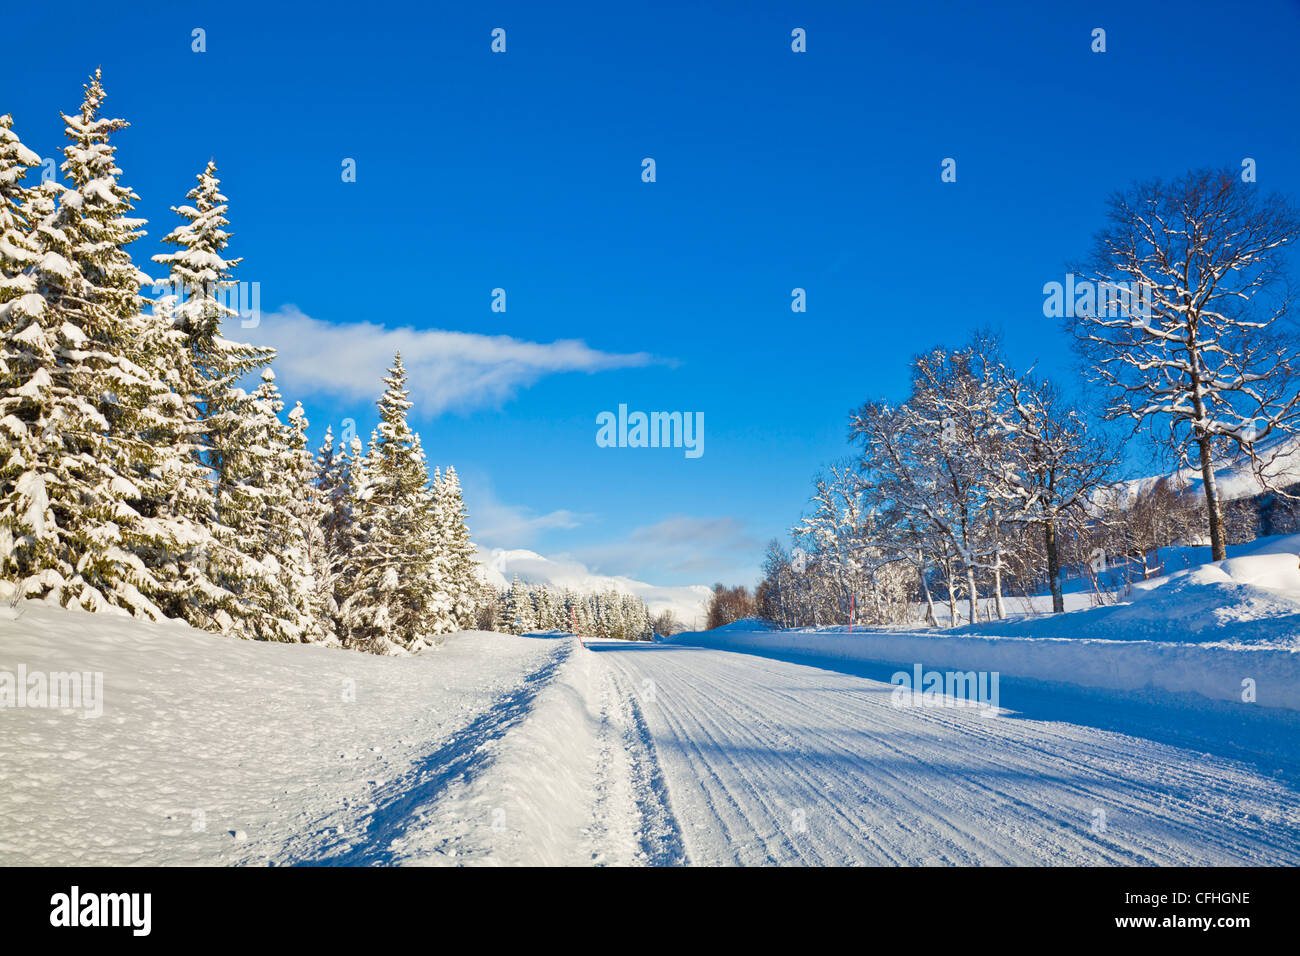 Route bordée d'arbre couvert de neige 91 Troms Norvège du Nord Scandinavie Europe Banque D'Images